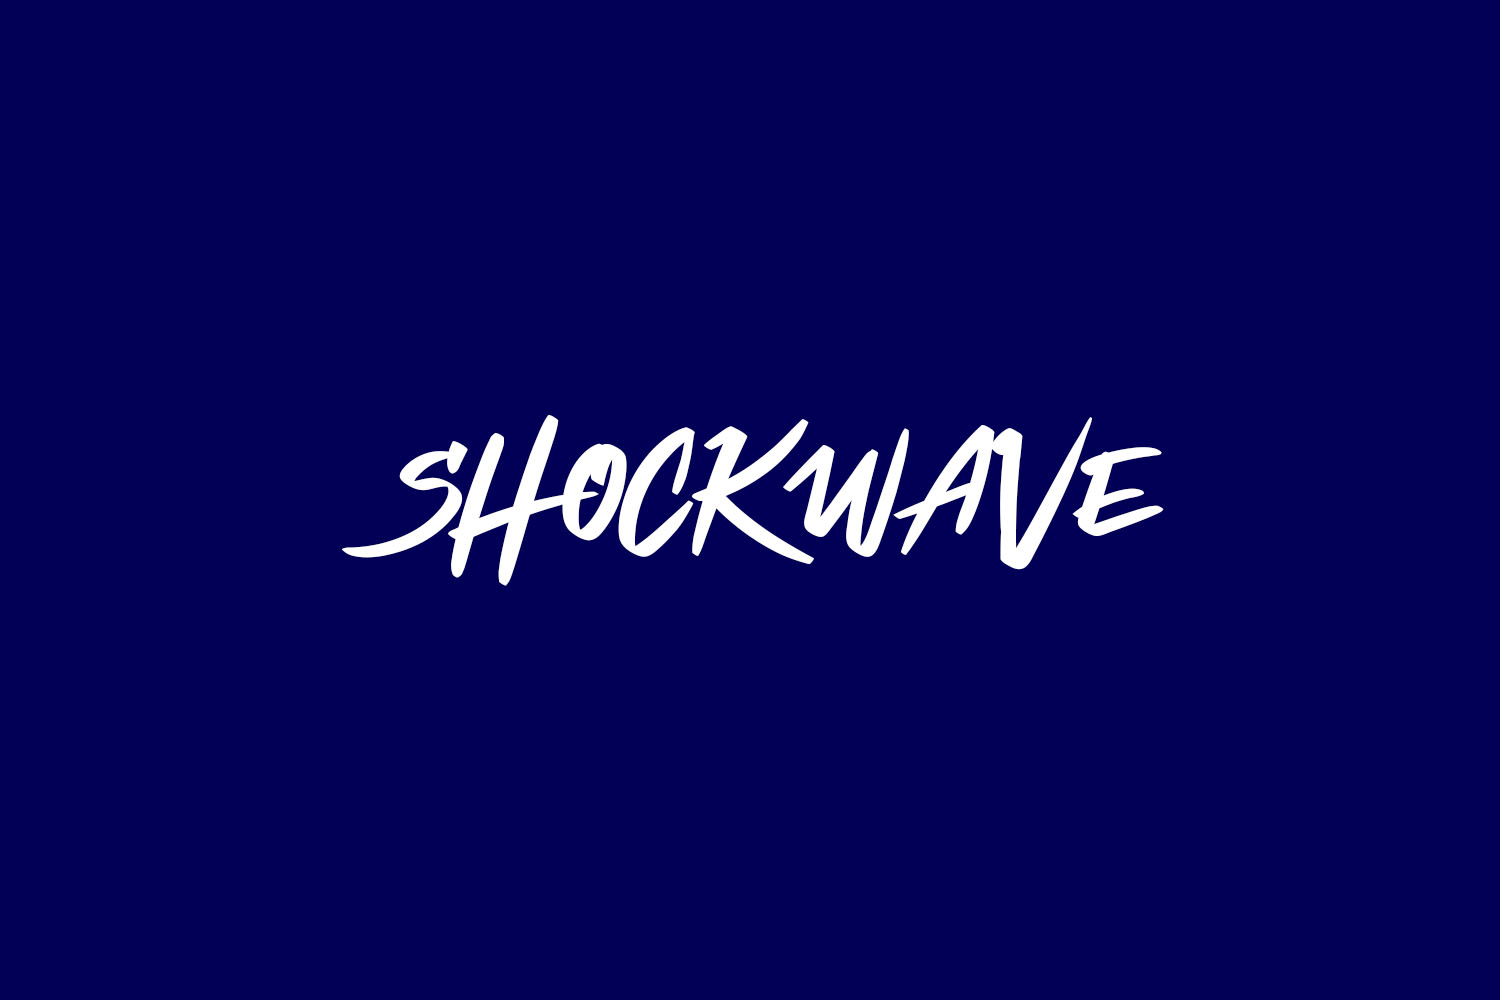 Shockwave Free Font